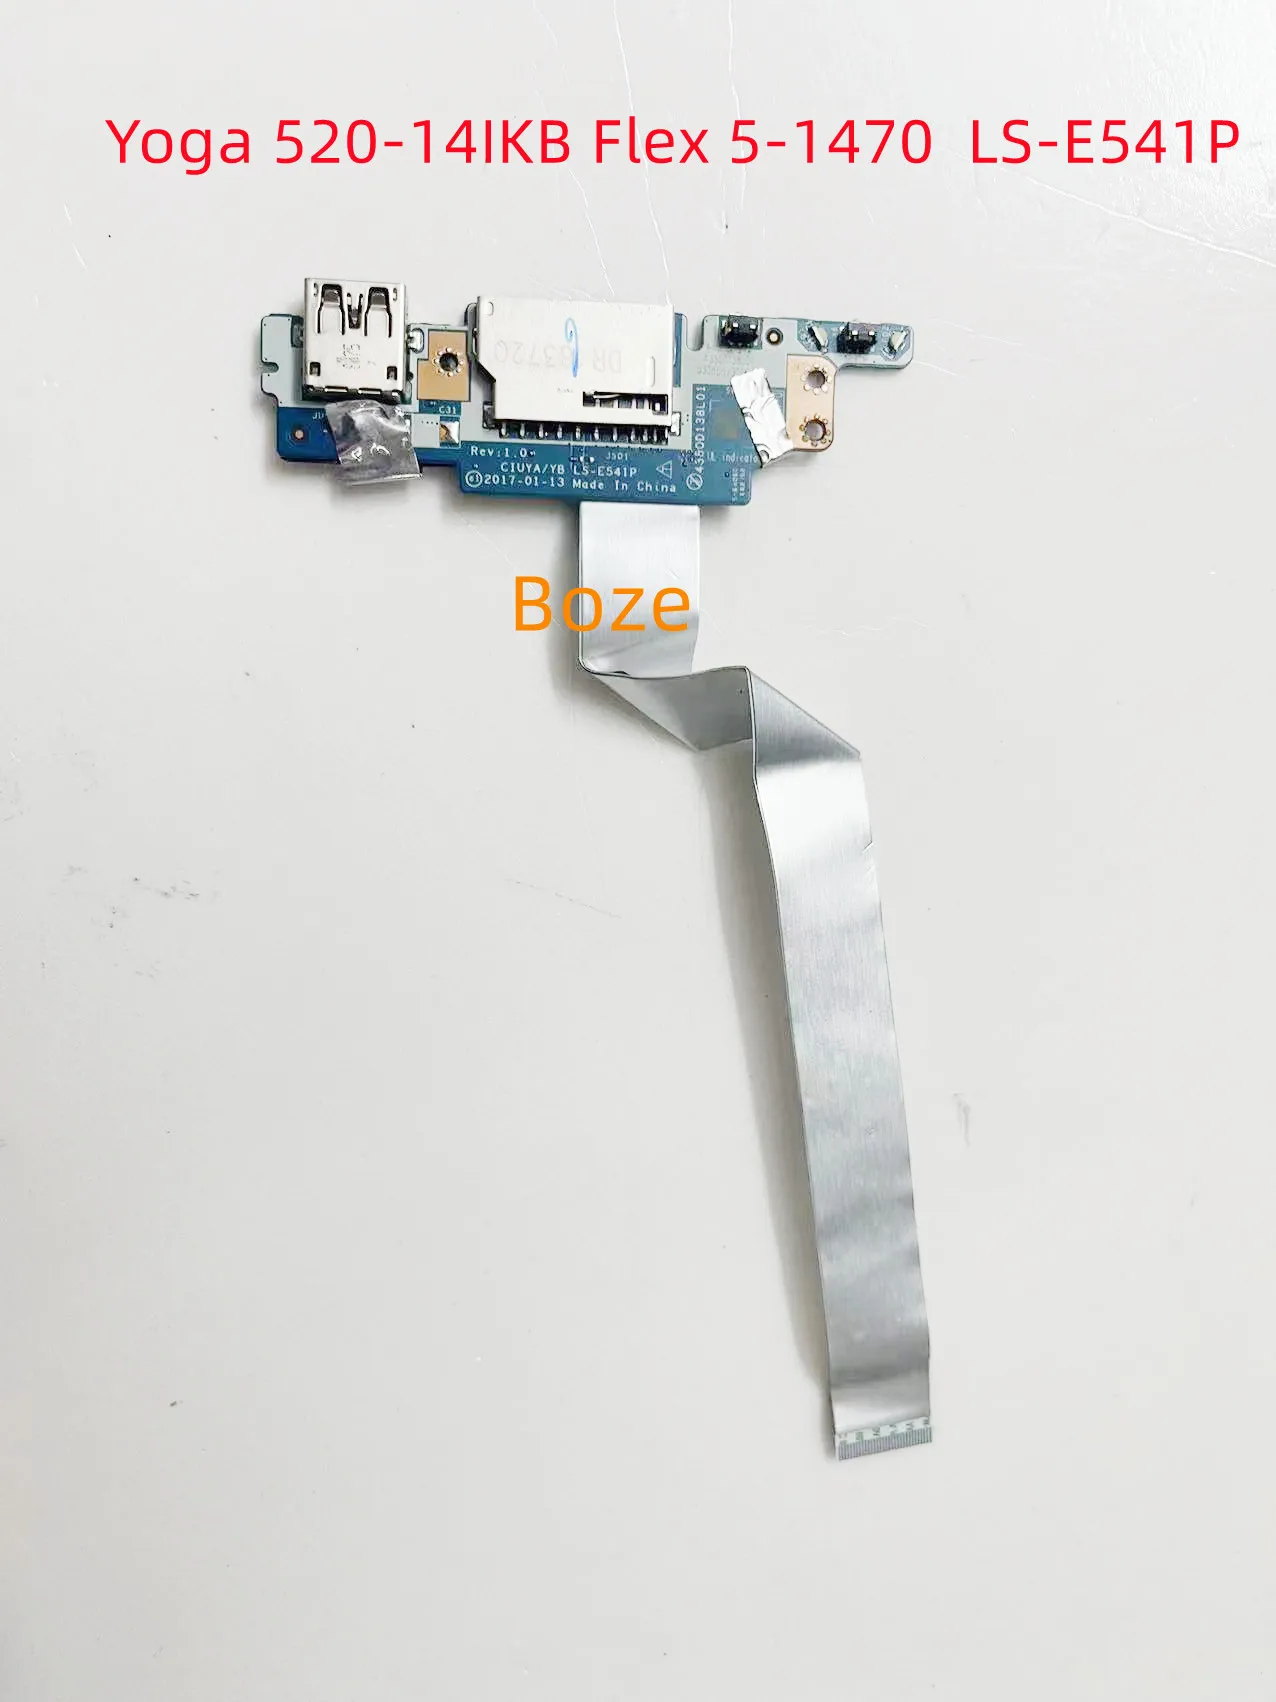 עבור Lenovo יוגה 520-14IKB להגמיש 5-1470 לחצן ההפעלה USB קורא כרטיסי לוח עם כבל LS-E541P 100% נבדק מהירה - 0